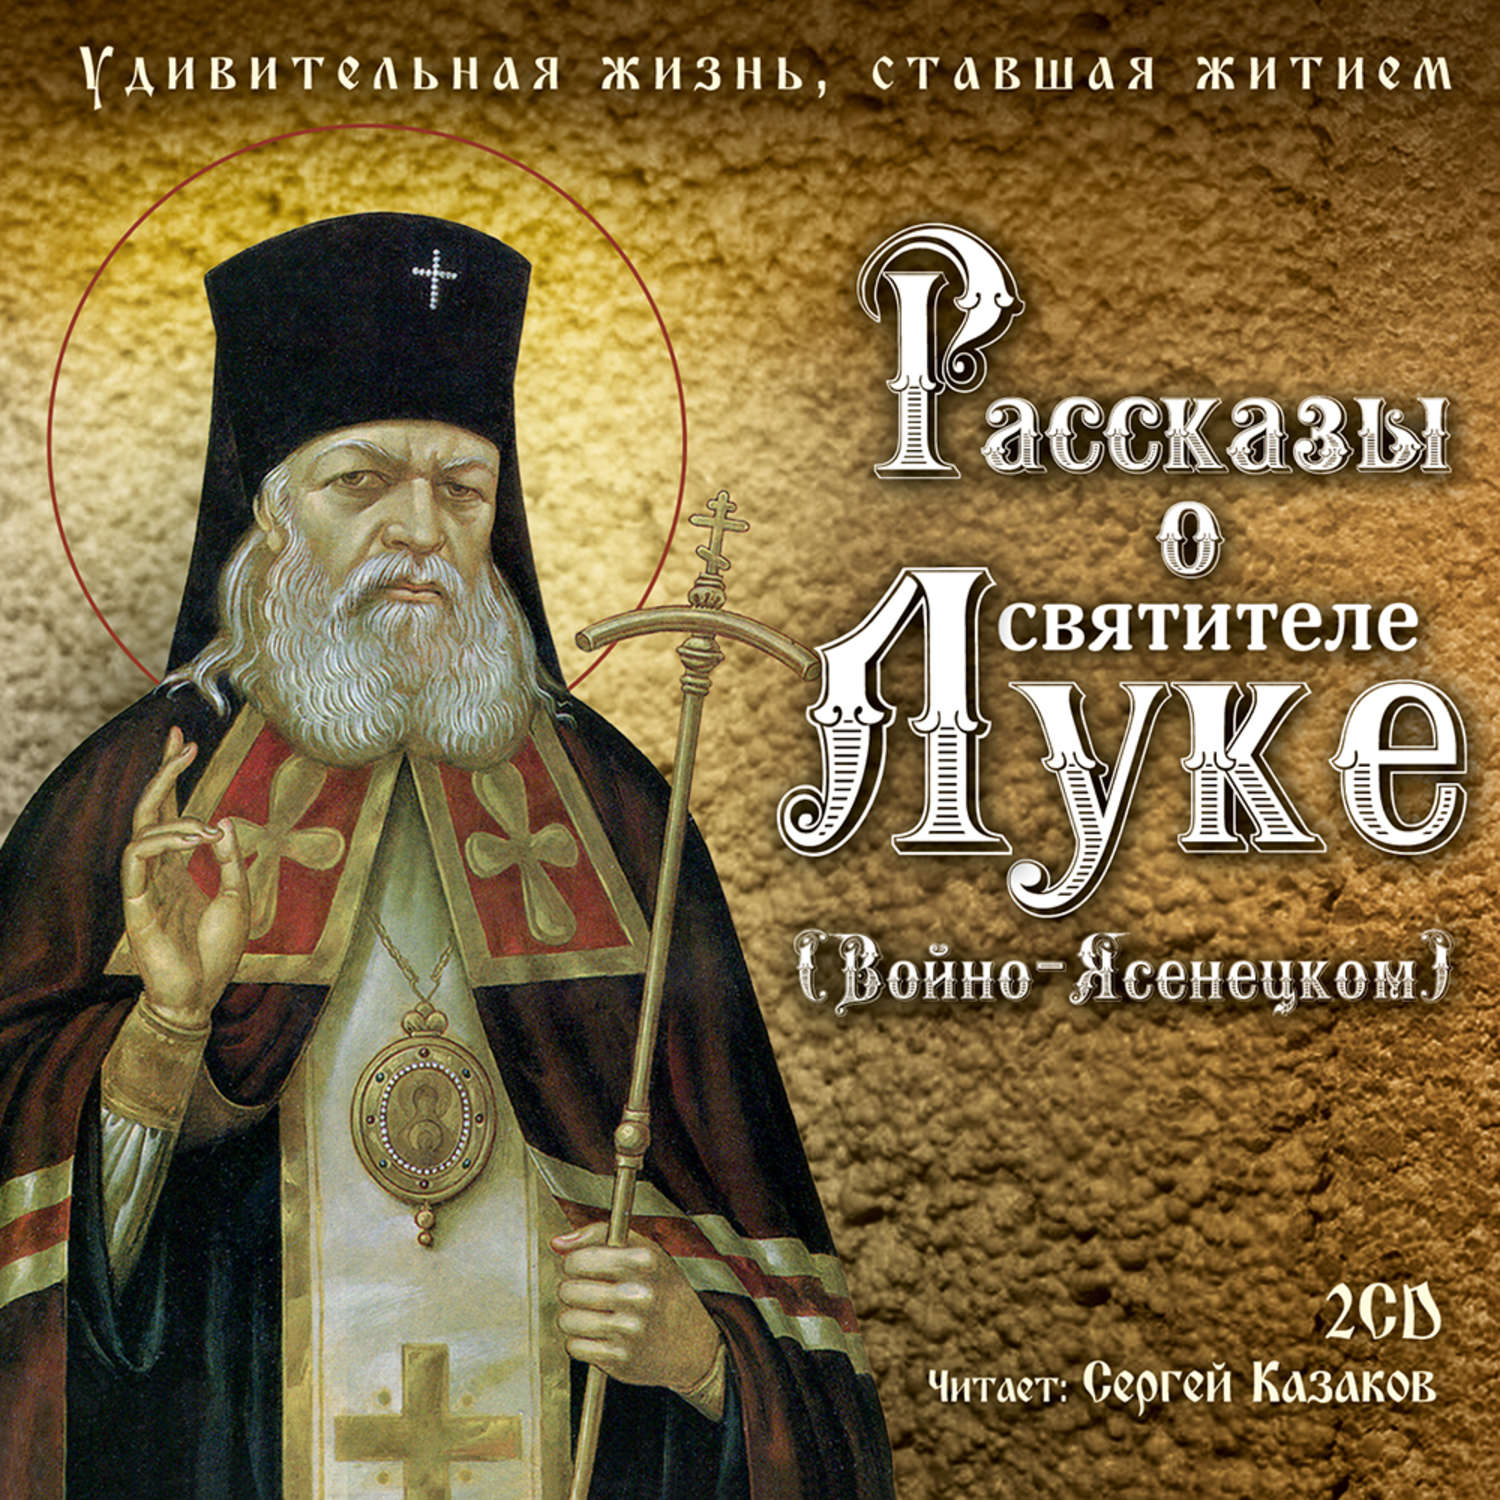 Книги о святителе луке Войно-Ясенецкий